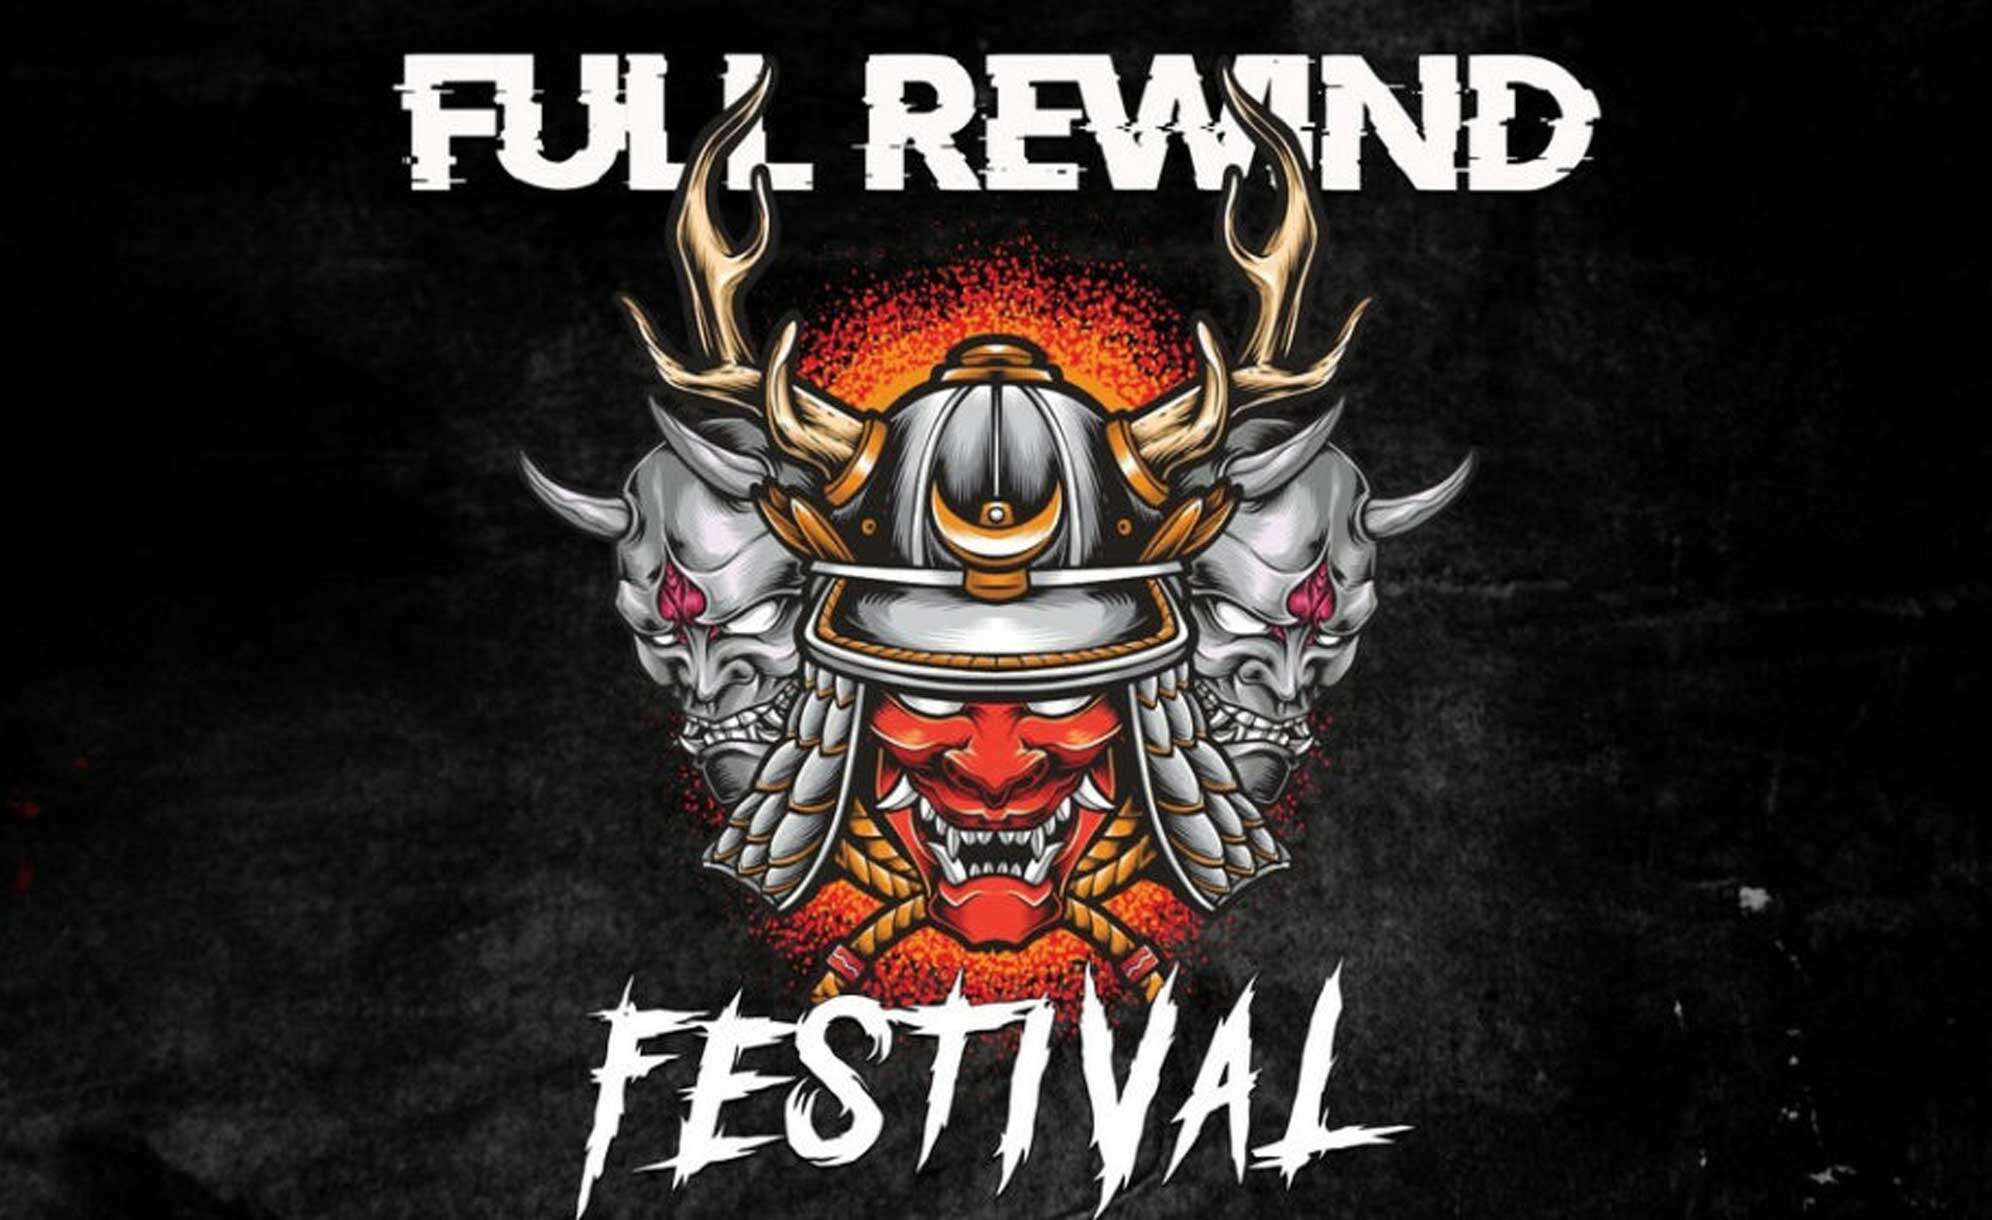 Das Logo vom Full Rewind Festival mit einem Krieger und Schrift